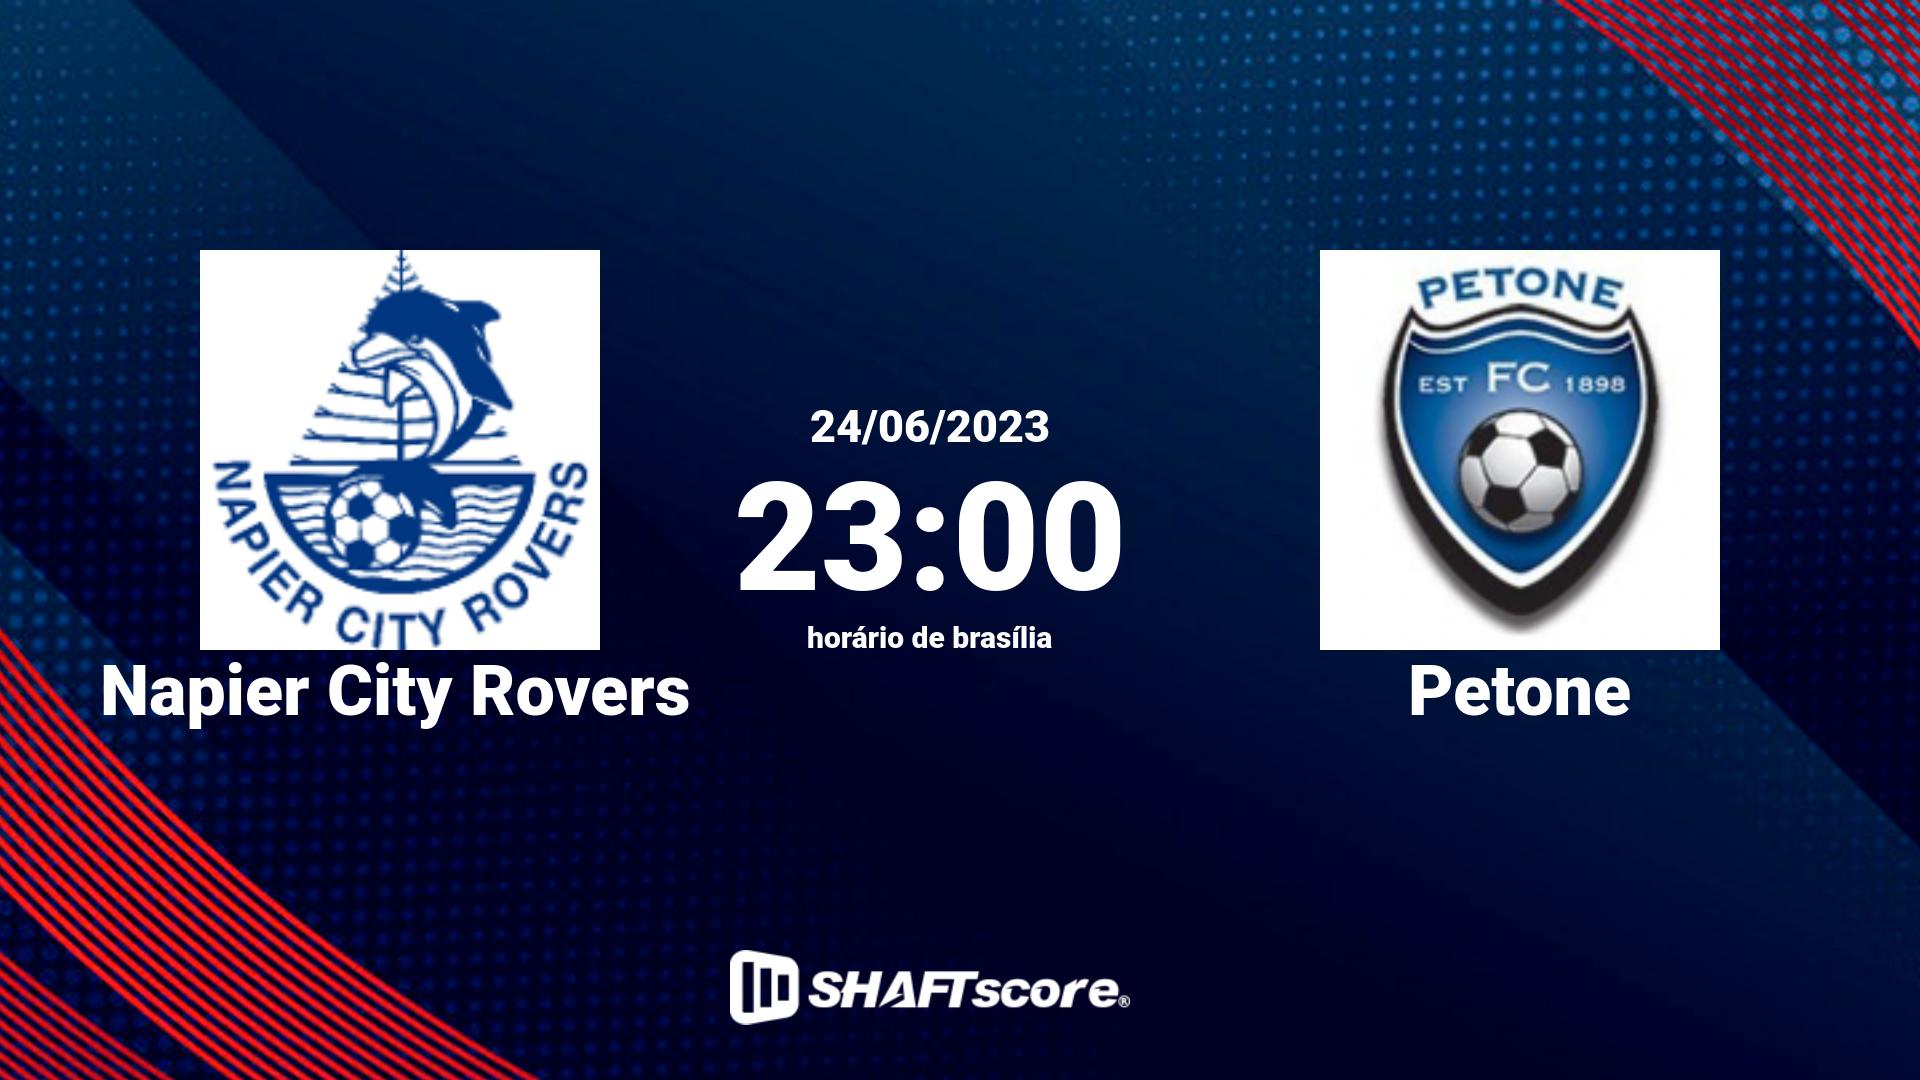 Estatísticas do jogo Napier City Rovers vs Petone 24.06 23:00